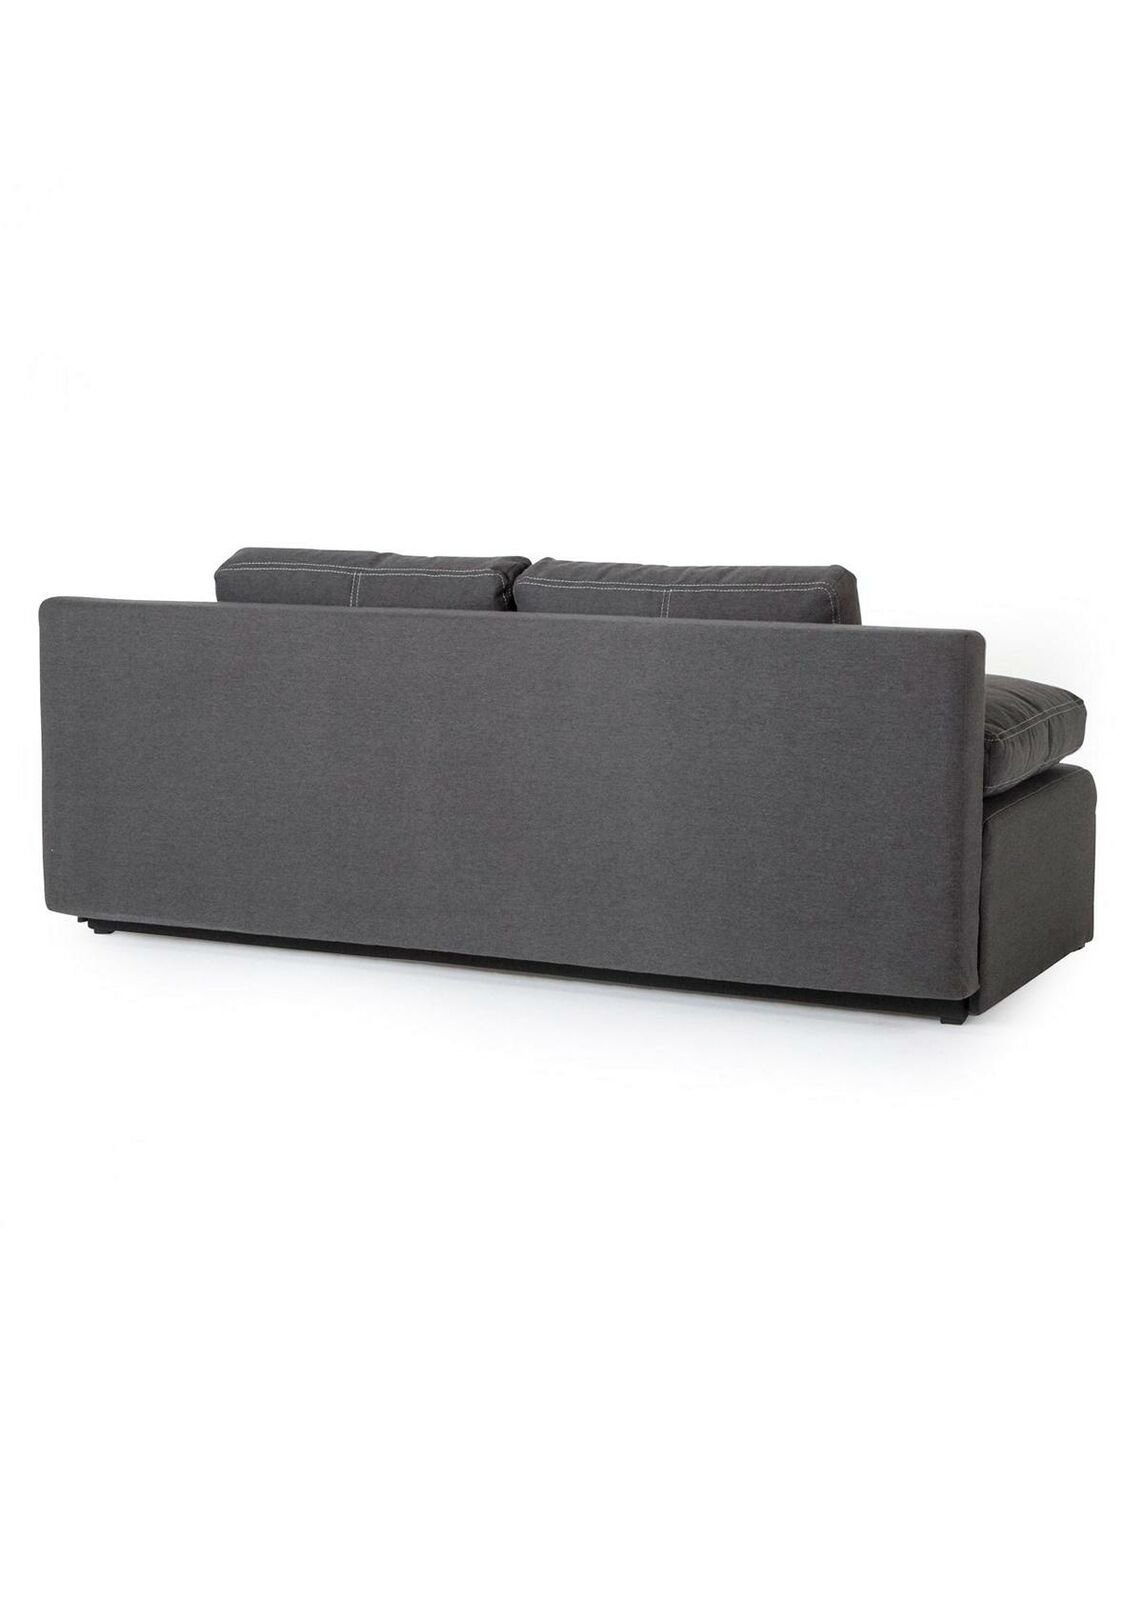 Stoffsofa JVmoebel Couch Luxus Grüner Neu, Möbel Design in Sofa Made Grau Europe Dreisitzer